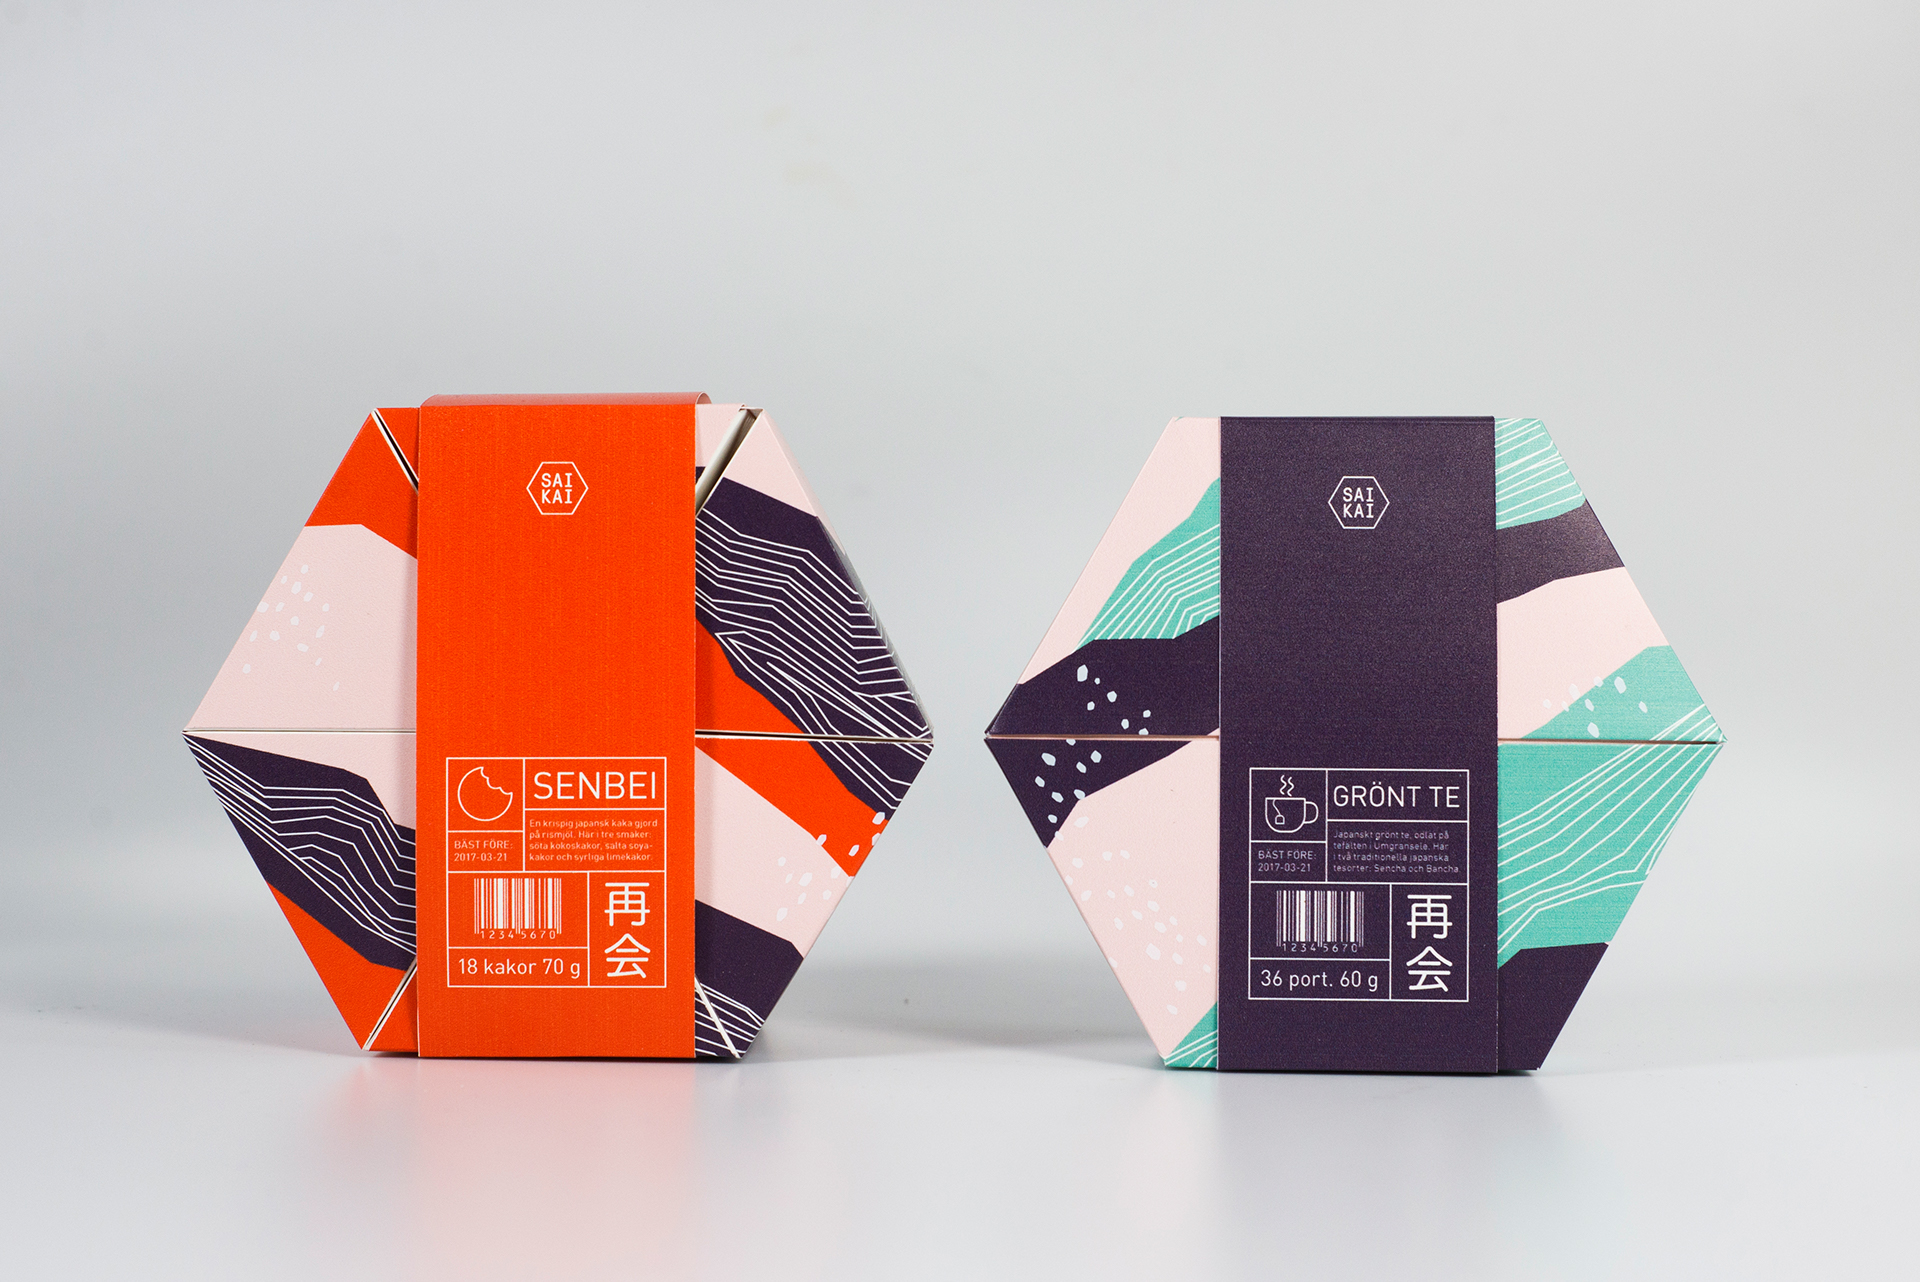 茶包装 山茶 包装设计 红点包装设计奖2019年_包装设计欣赏_包装人-全球创意包装设计网 - 包装设计工具站!